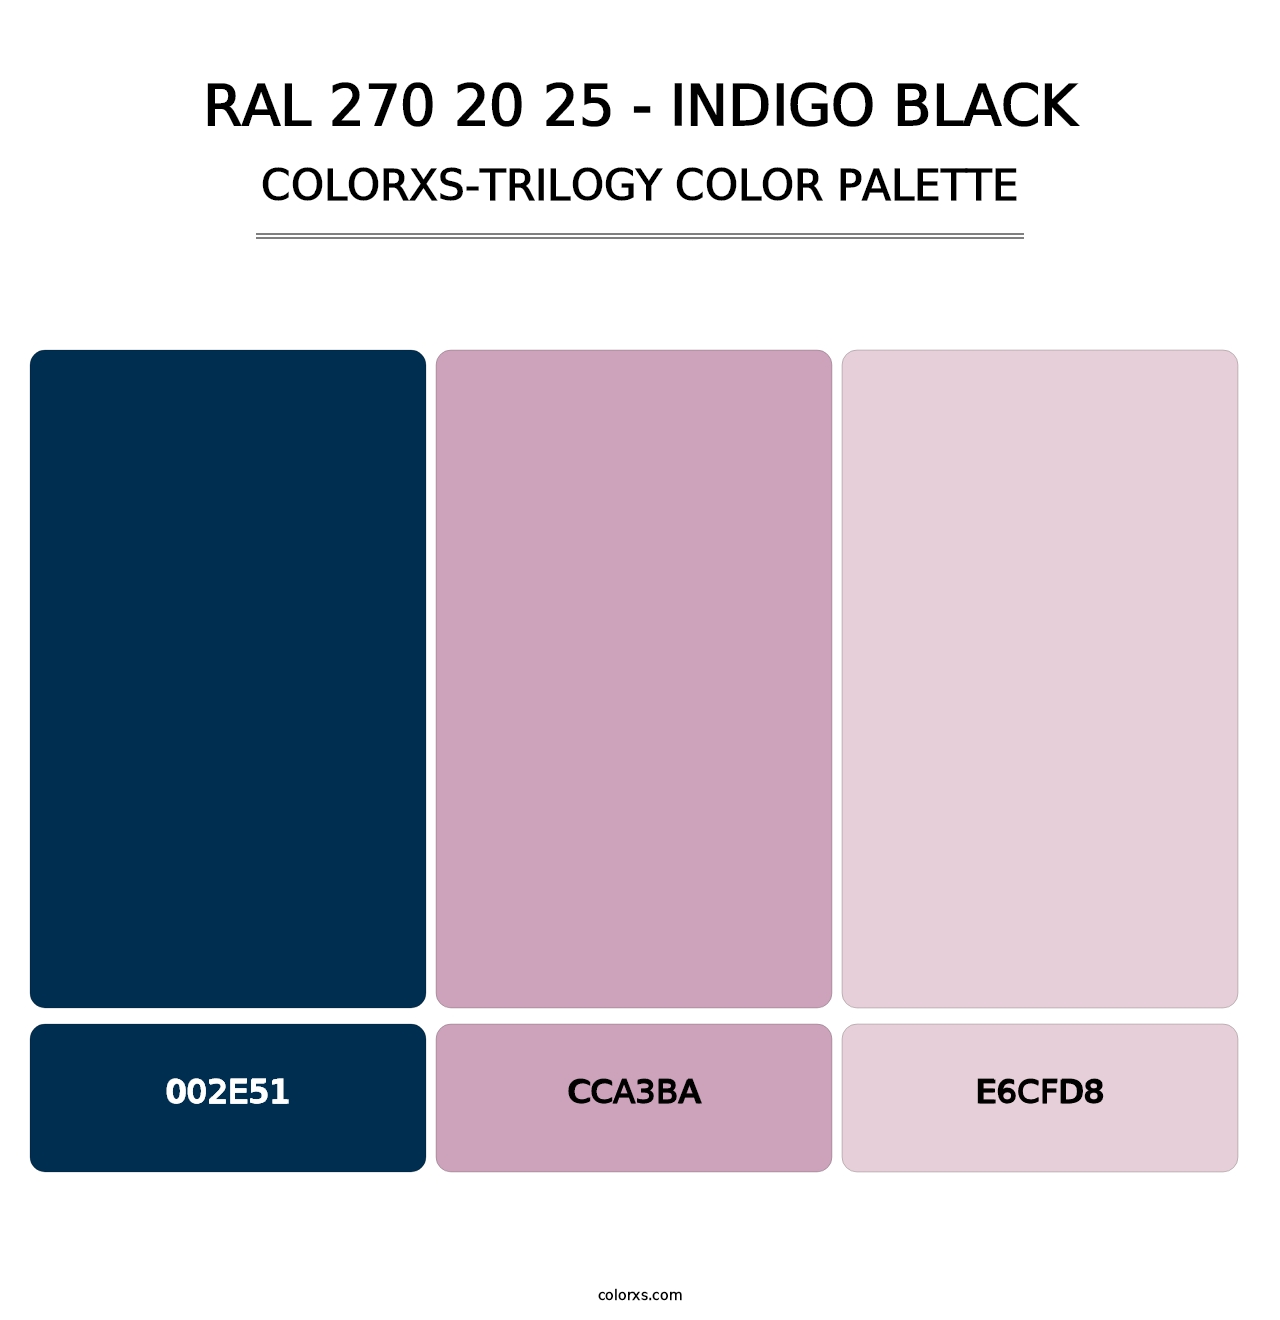 RAL 270 20 25 - Indigo Black - Colorxs Trilogy Palette